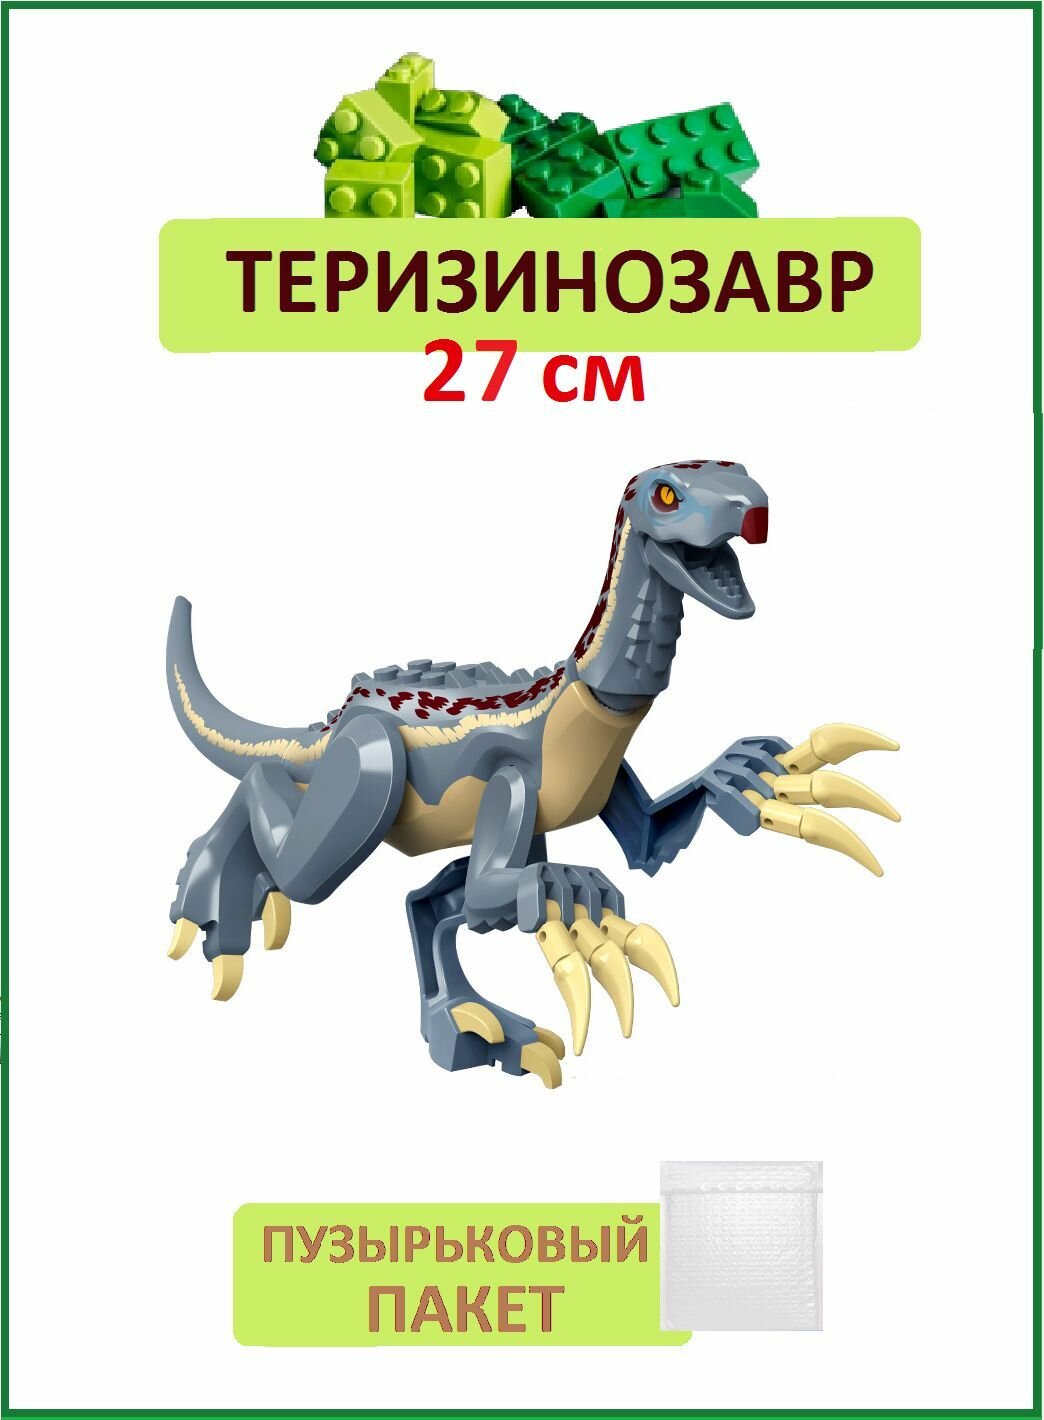 Теризинозавр с когтями, Динозавр фигурка из серии Парк Юрского периода, 27см